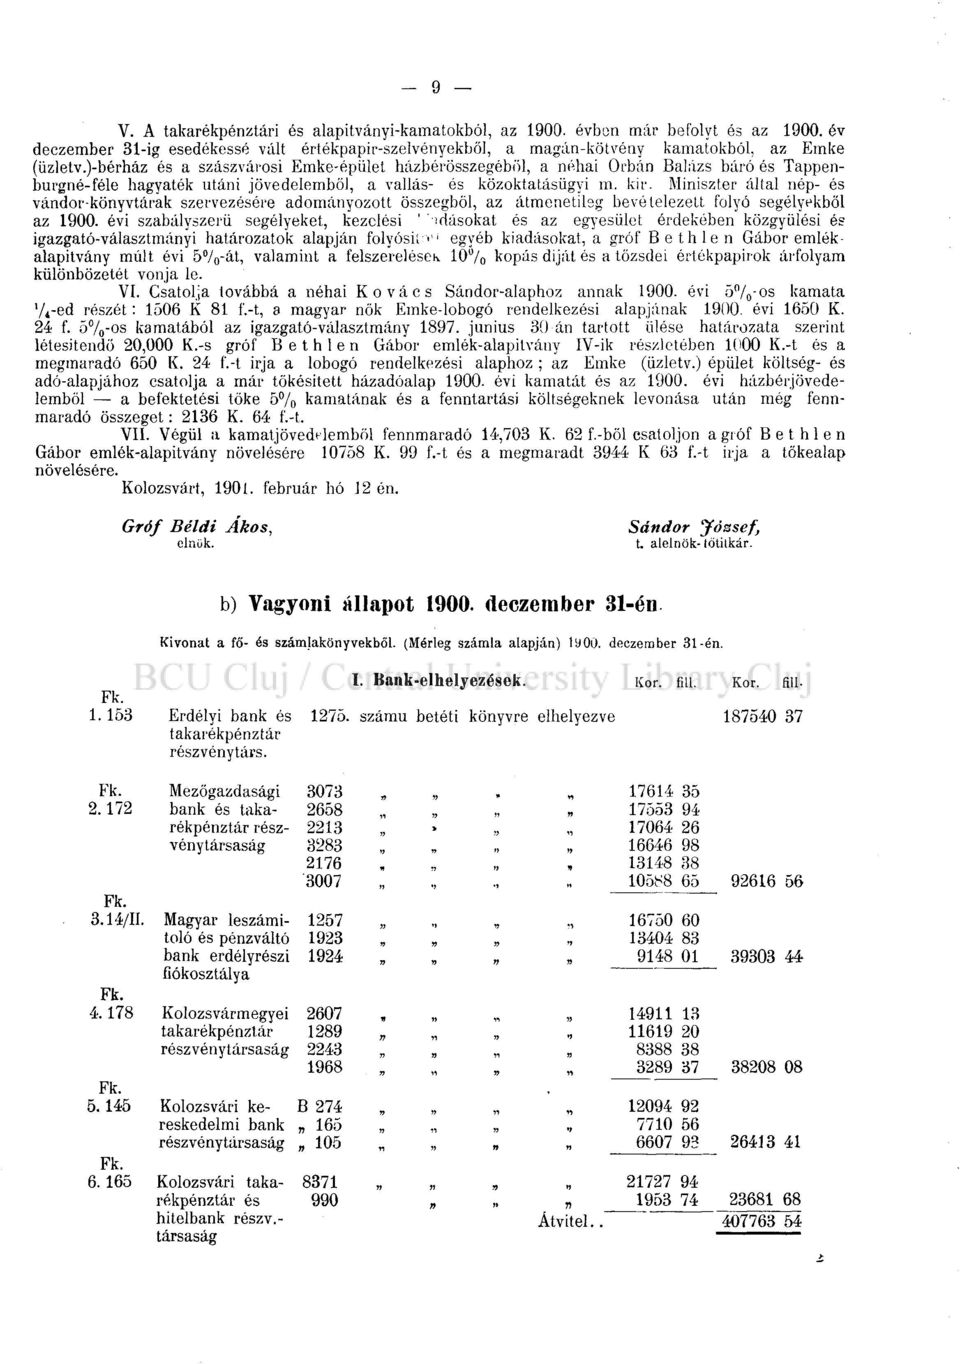 Miniszter által nép- és vándor-könyvtárak szervezésére adományozott összegből, az átmenetileg bevételezett folyó segélyekből az 1900.